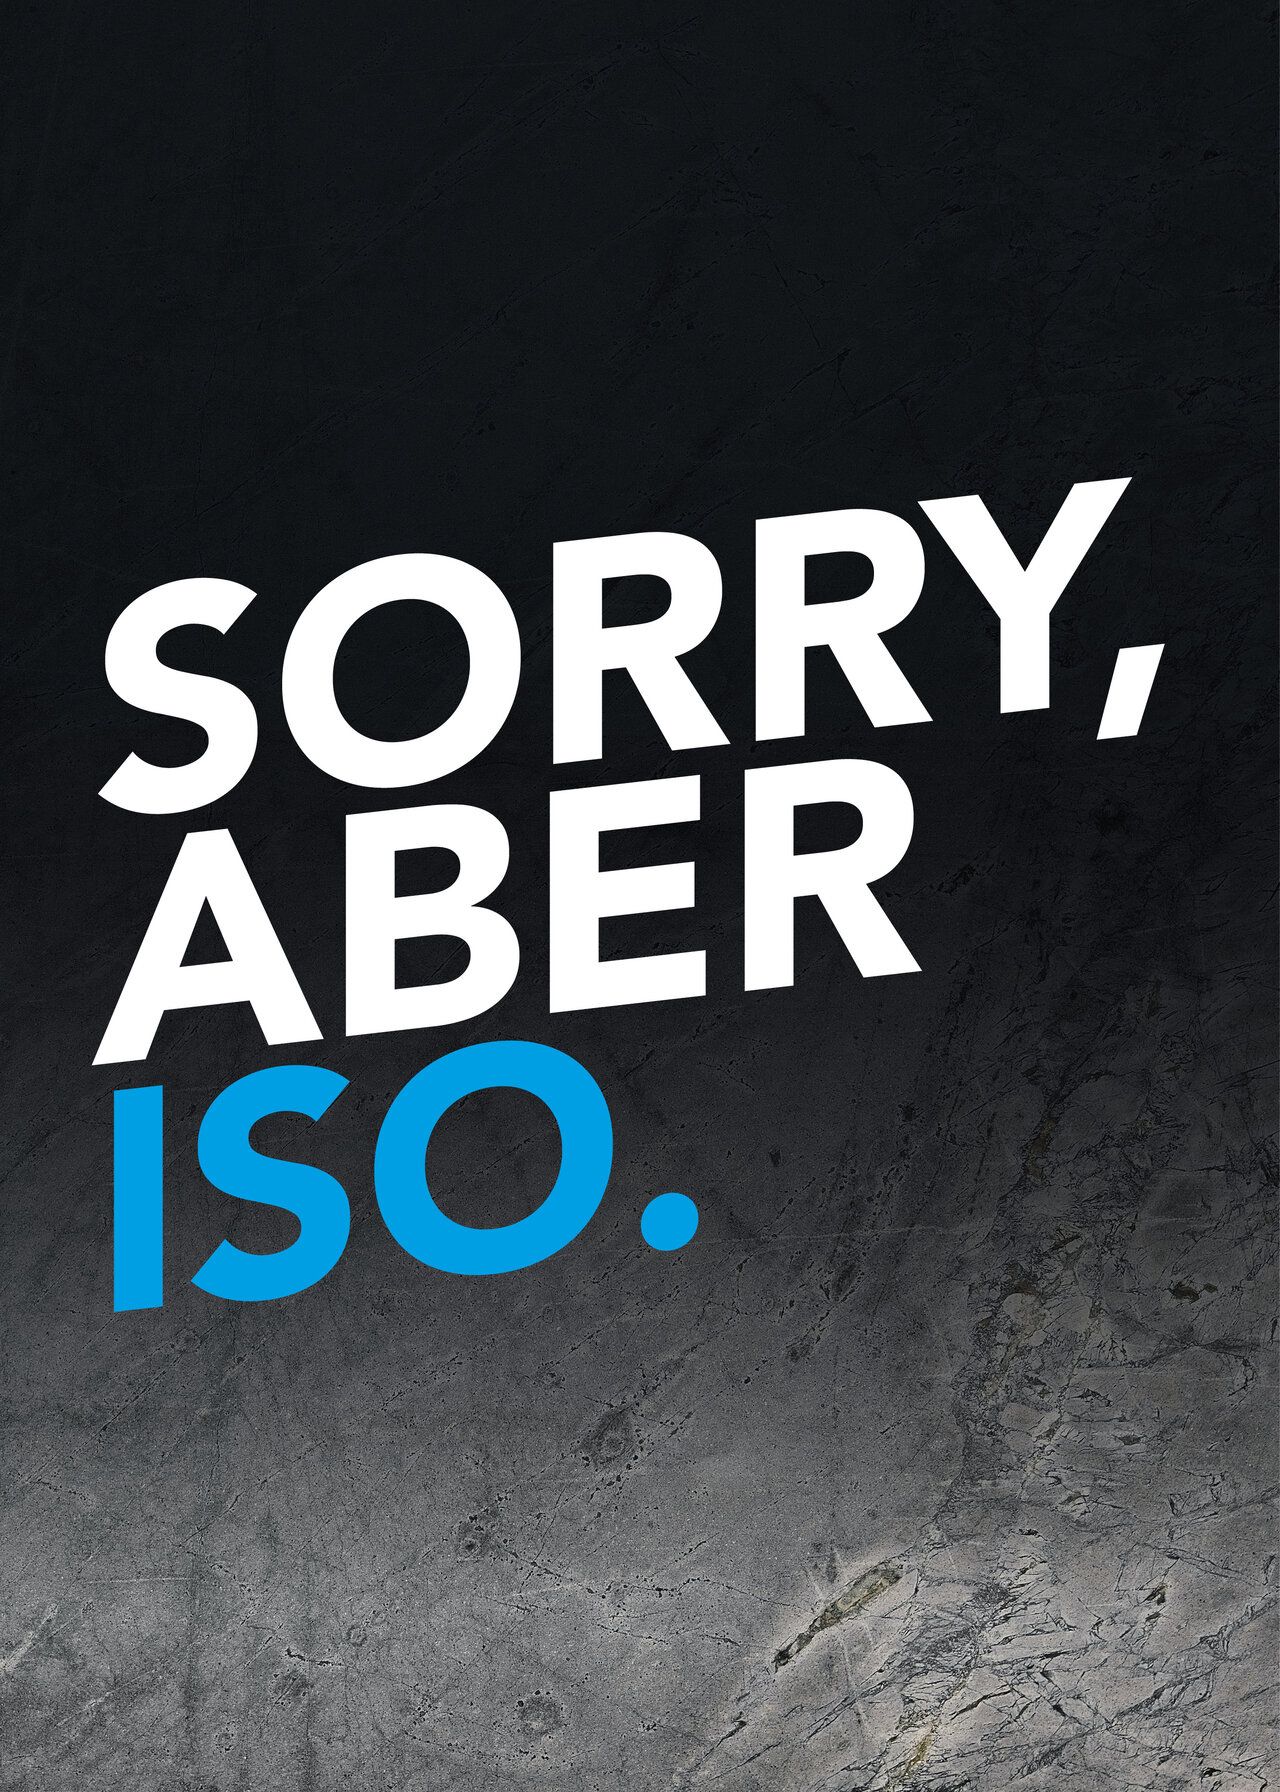 Der Spruch "Sorry, aber iso." in blau und weißer Schrift.